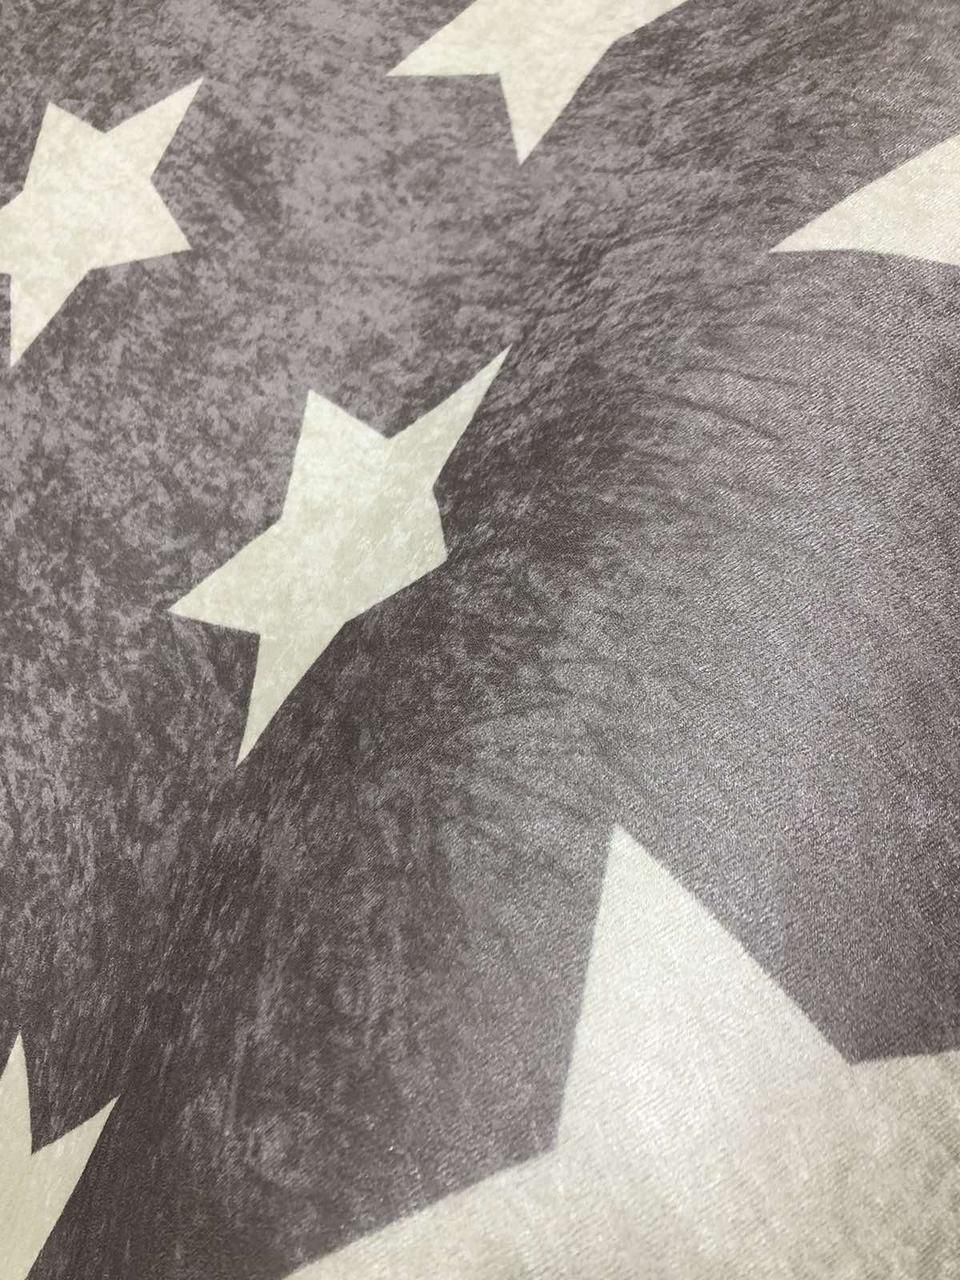 Круглий килим "Зірки на сірому" (діметр 160 см)